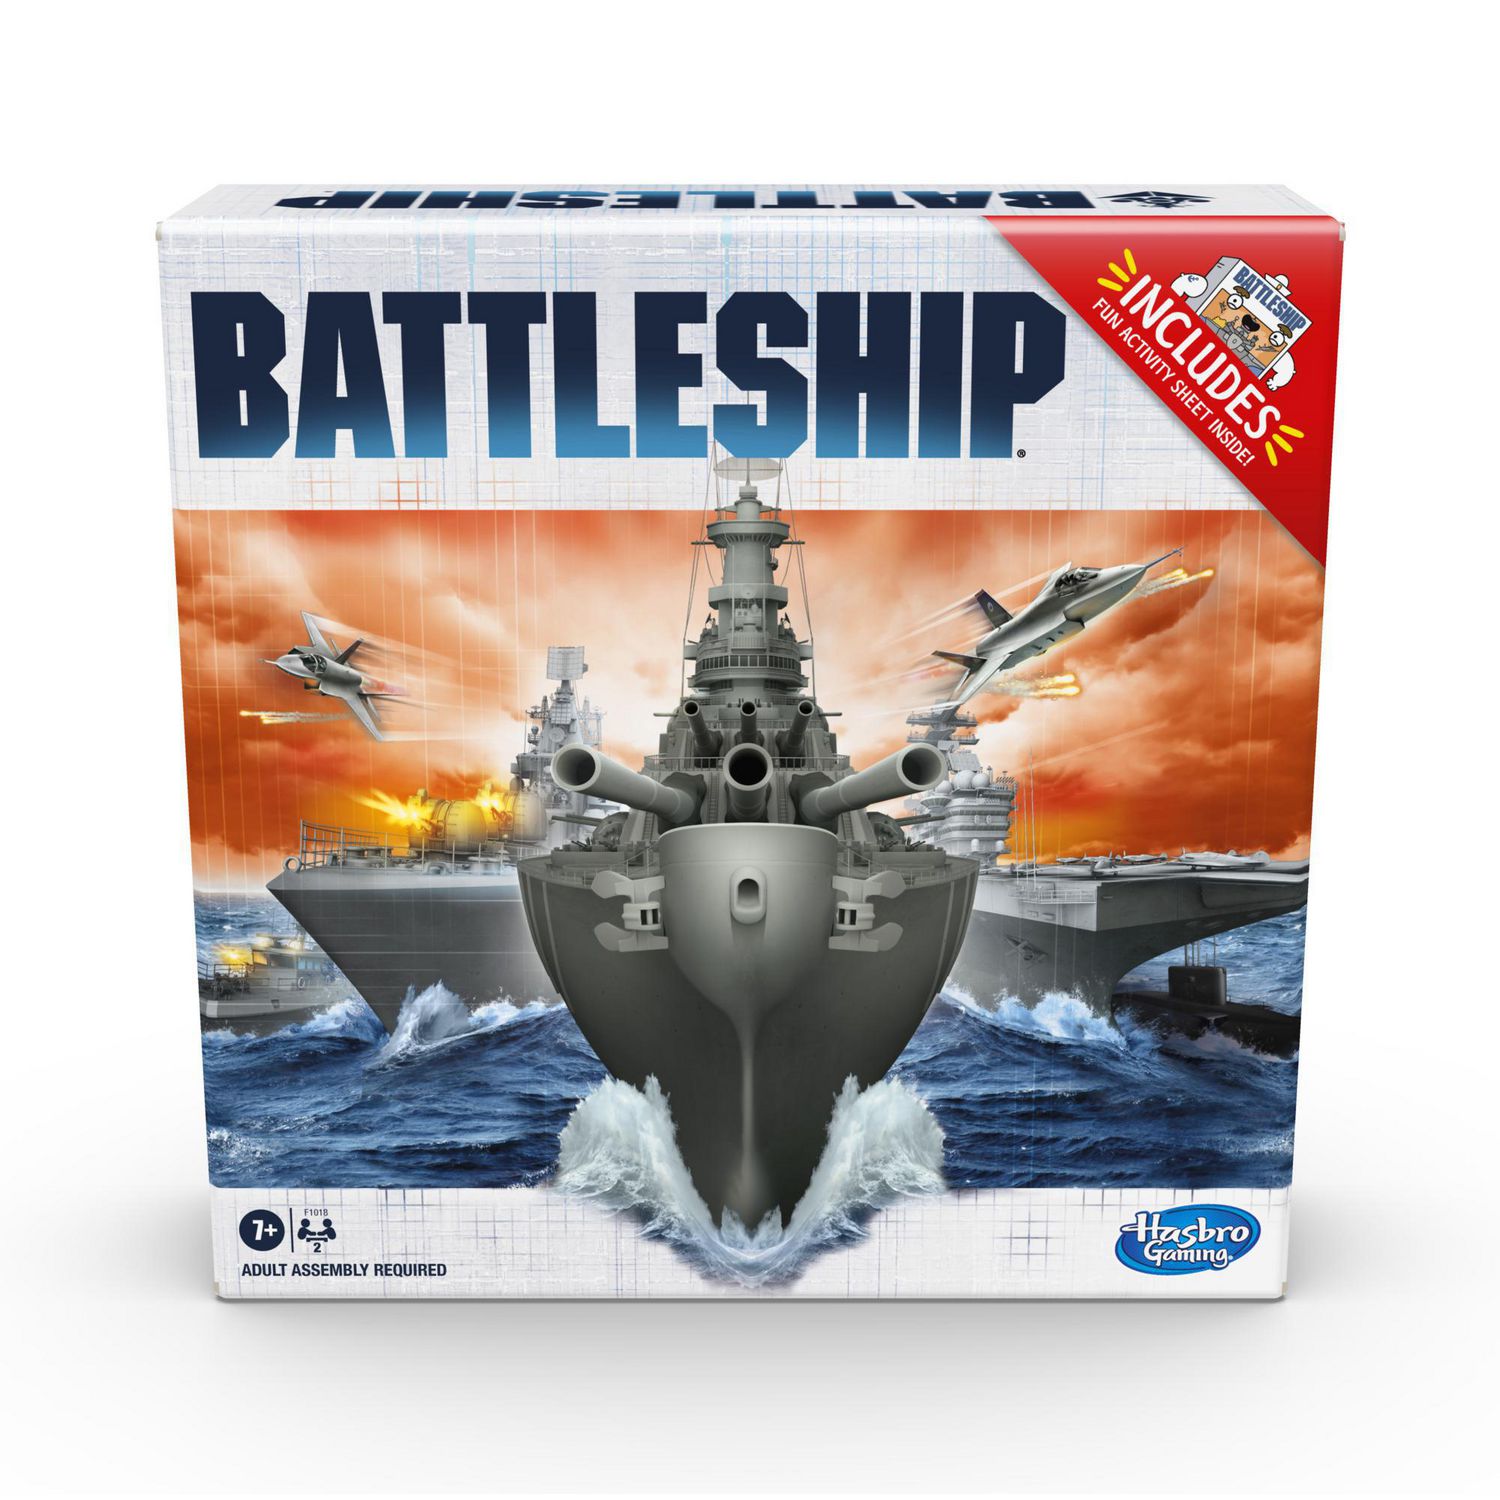 battleship game online free 1 player